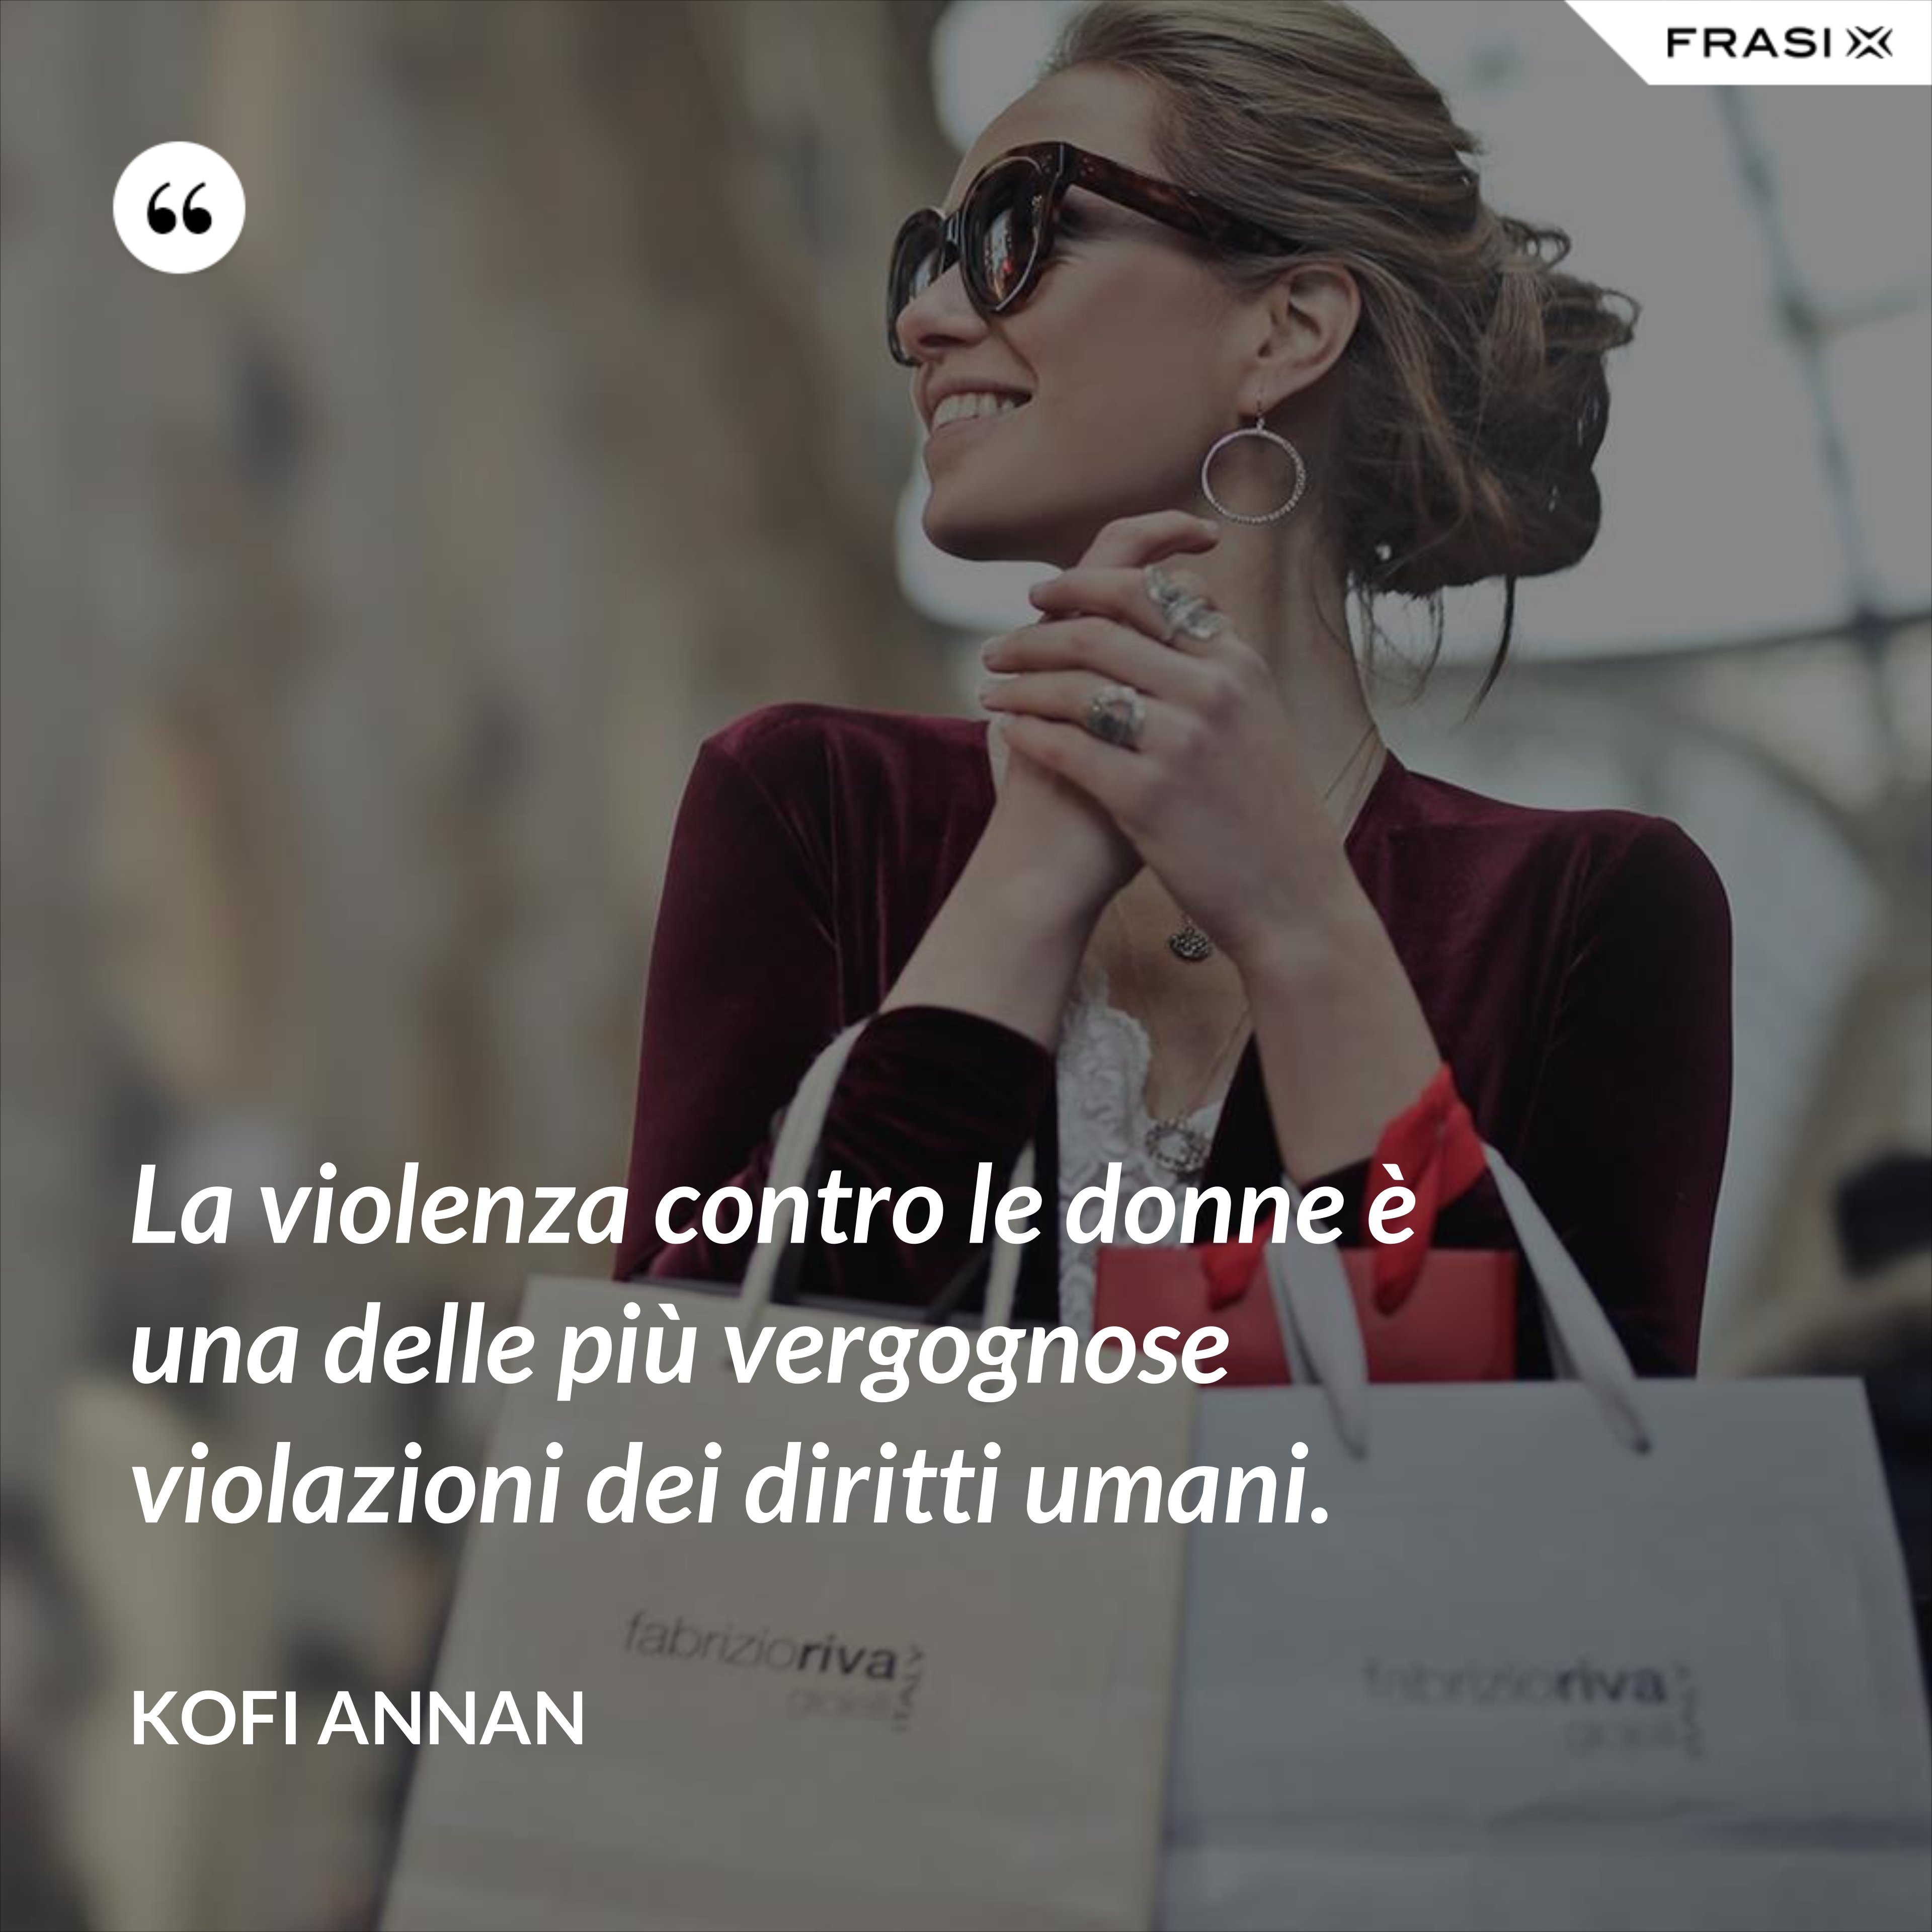 La violenza contro le donne è una delle più vergognose violazioni dei diritti umani. - Kofi Annan